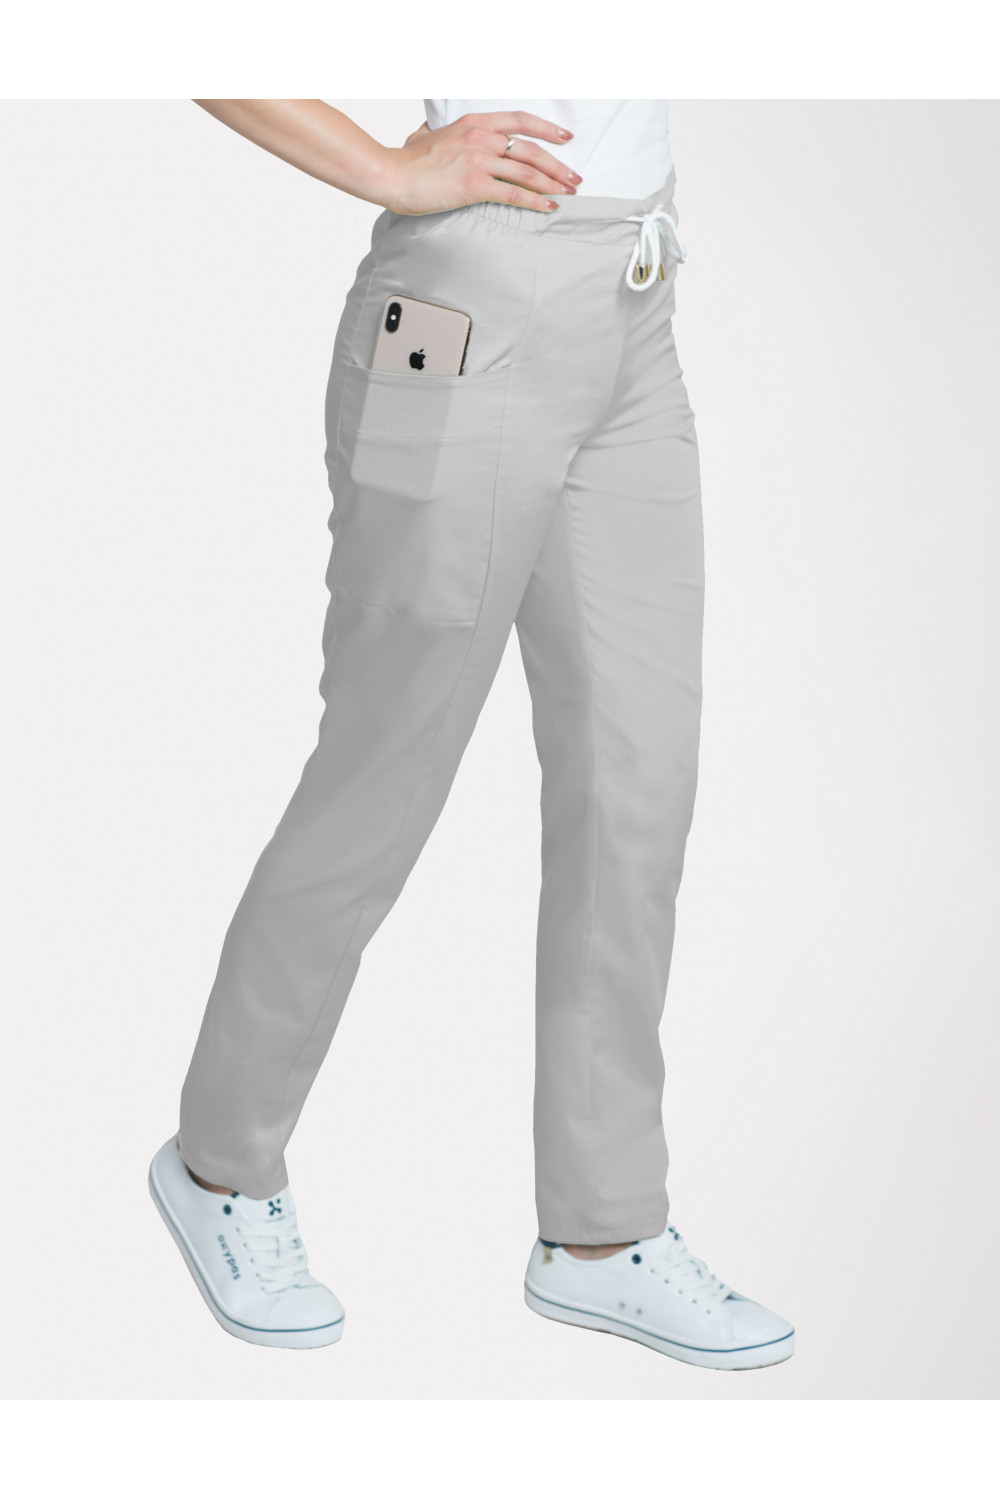 M-200X Elastyczne spodnie damskie medyczne kosmetyczne na sznurku szary